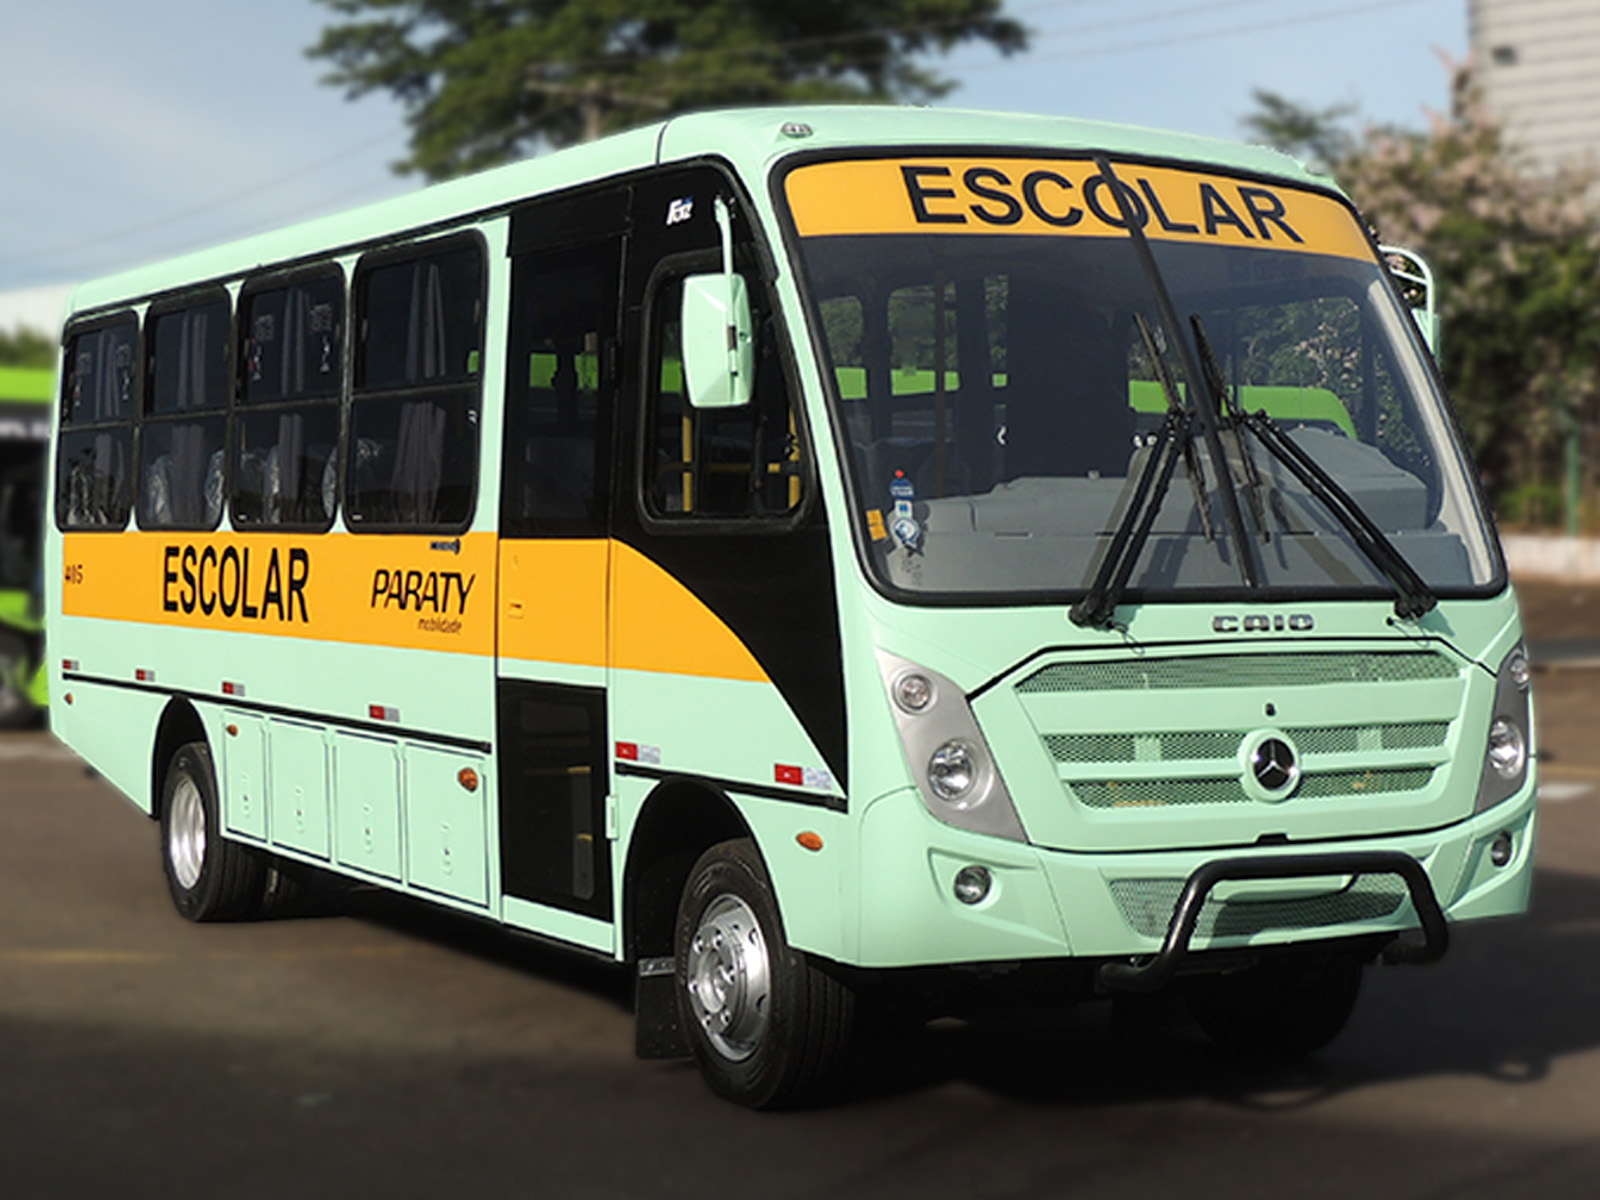 Caio entre 12 miniônibus para transporte escolar em São Carlos (SP)